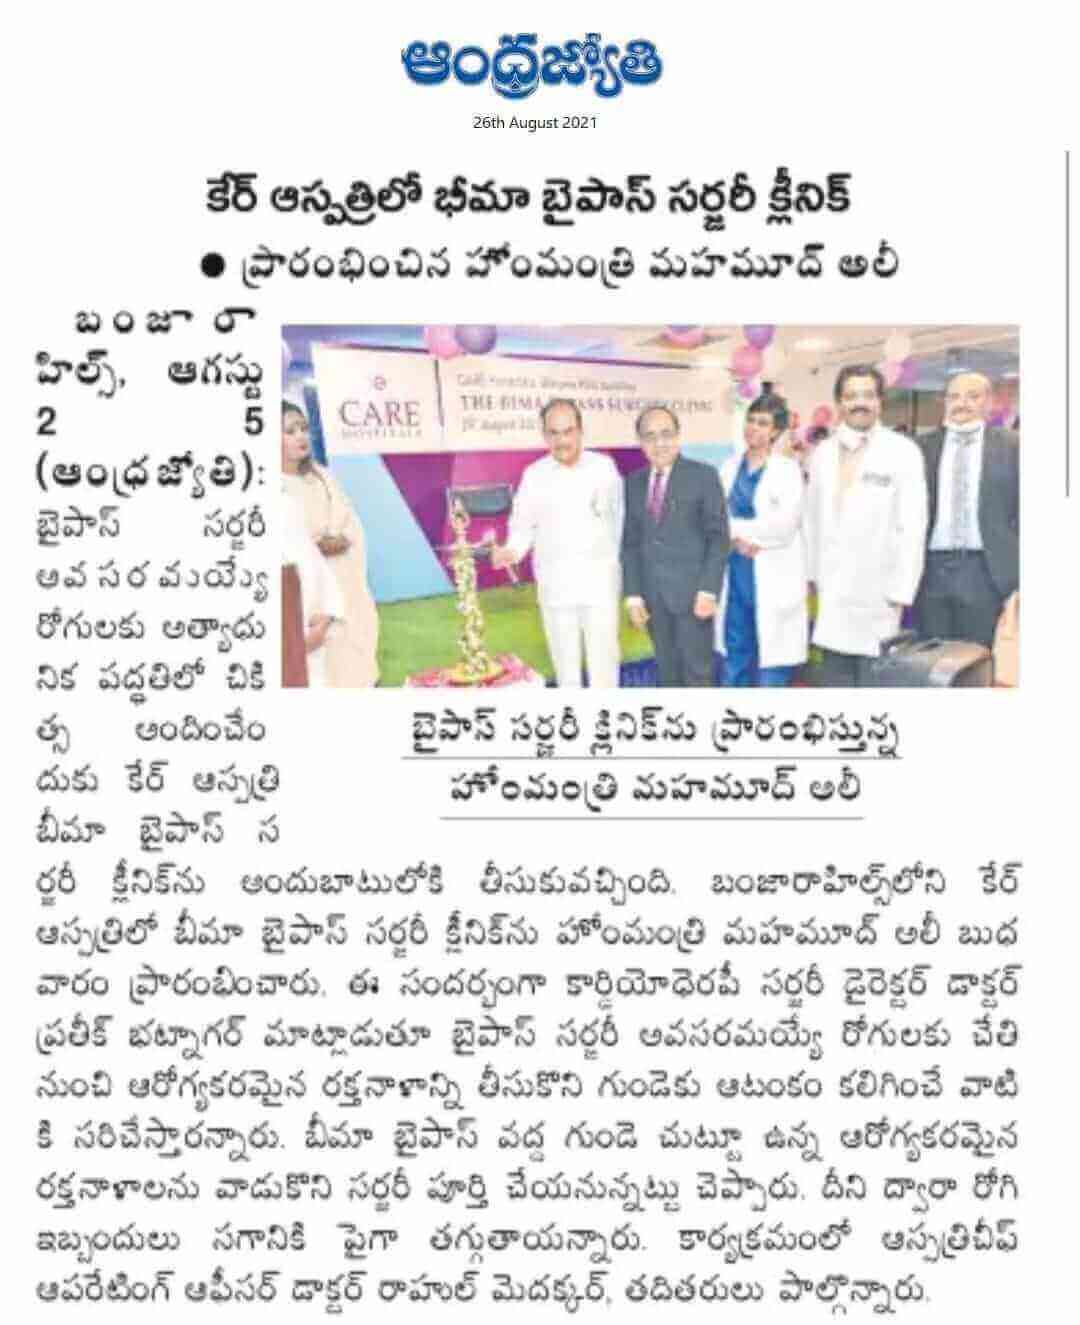 إطلاق عيادة BIMA للجراحة في مستشفيات CARE - Banjara Hills by Andhra Jyothi